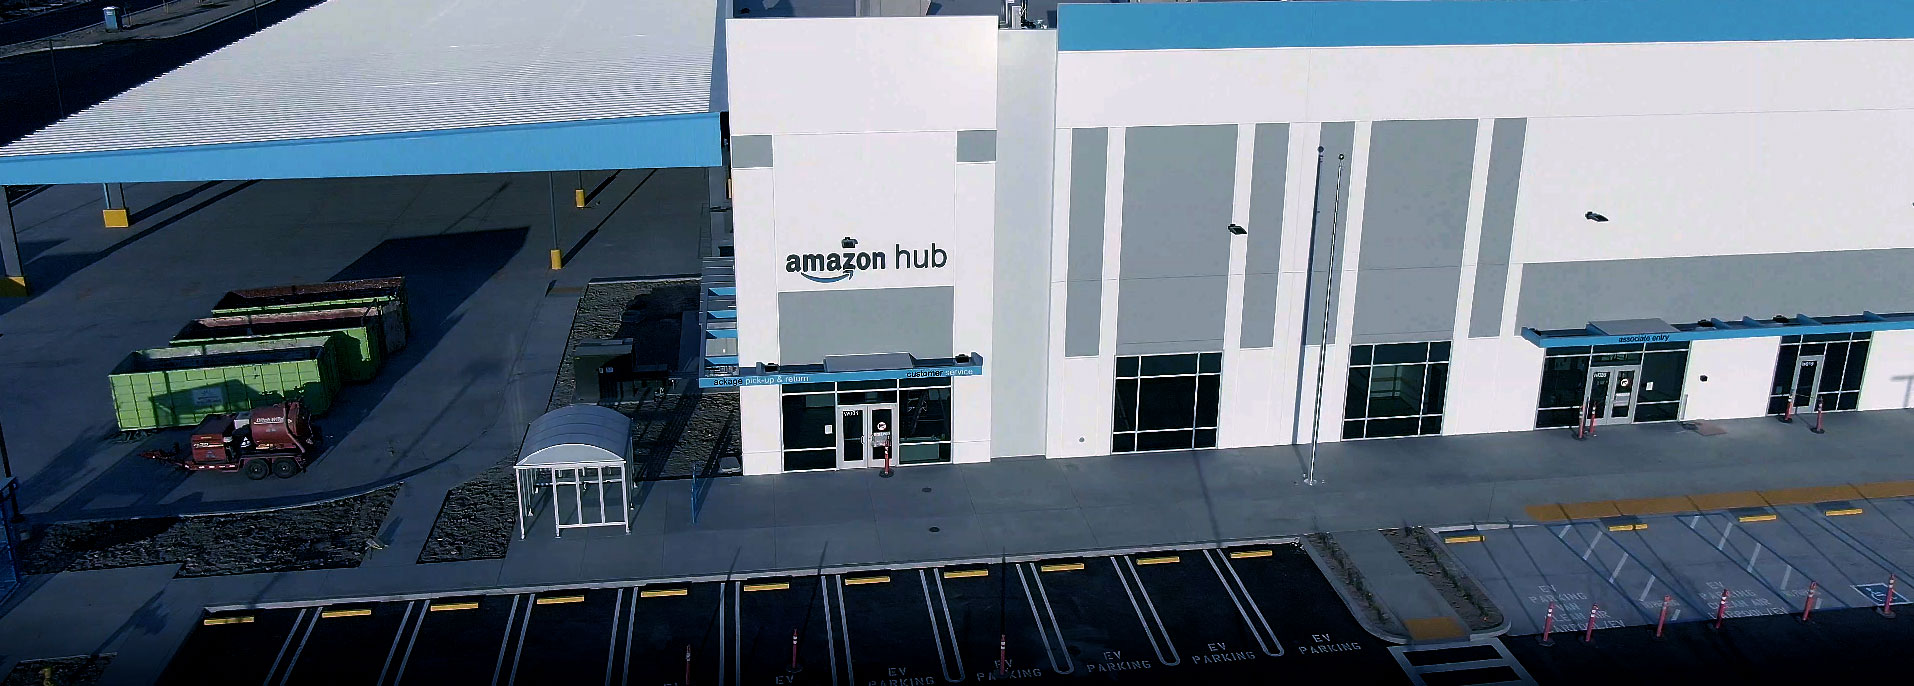 Amazon Hub - Roseville